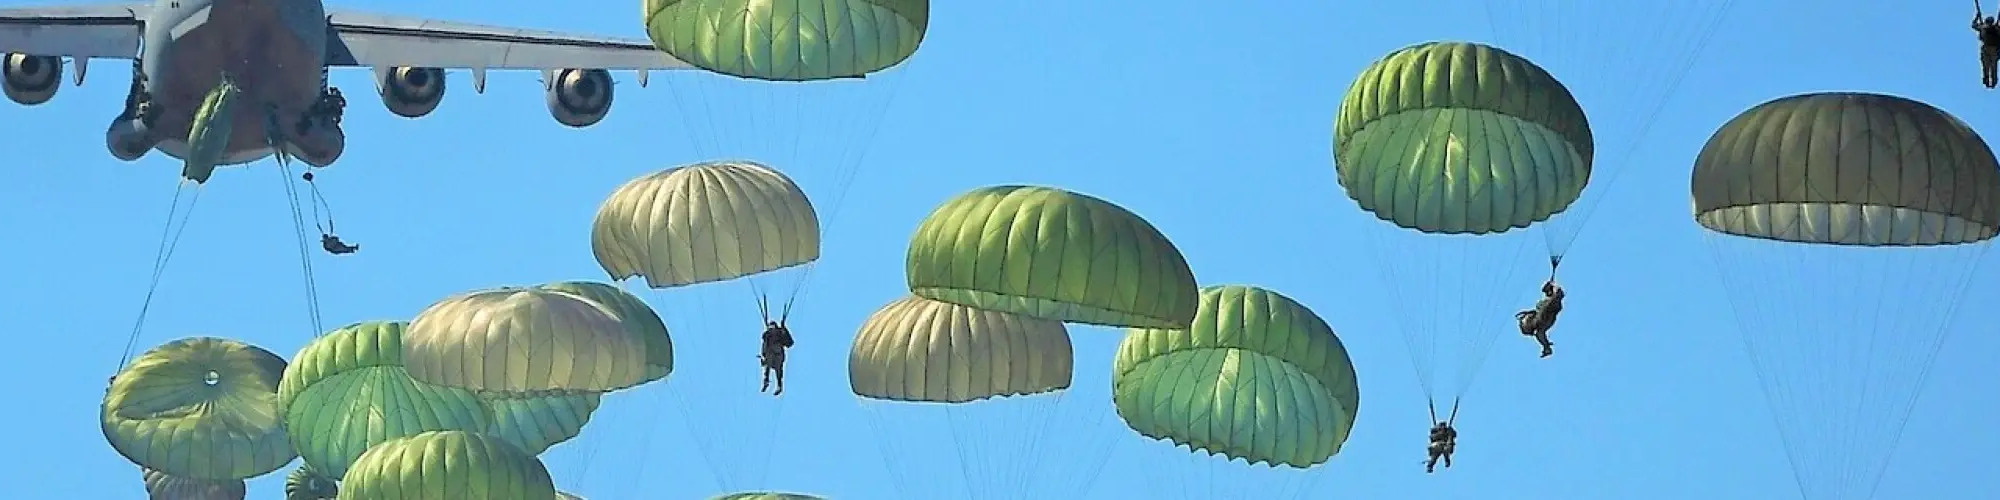 Parachute Law